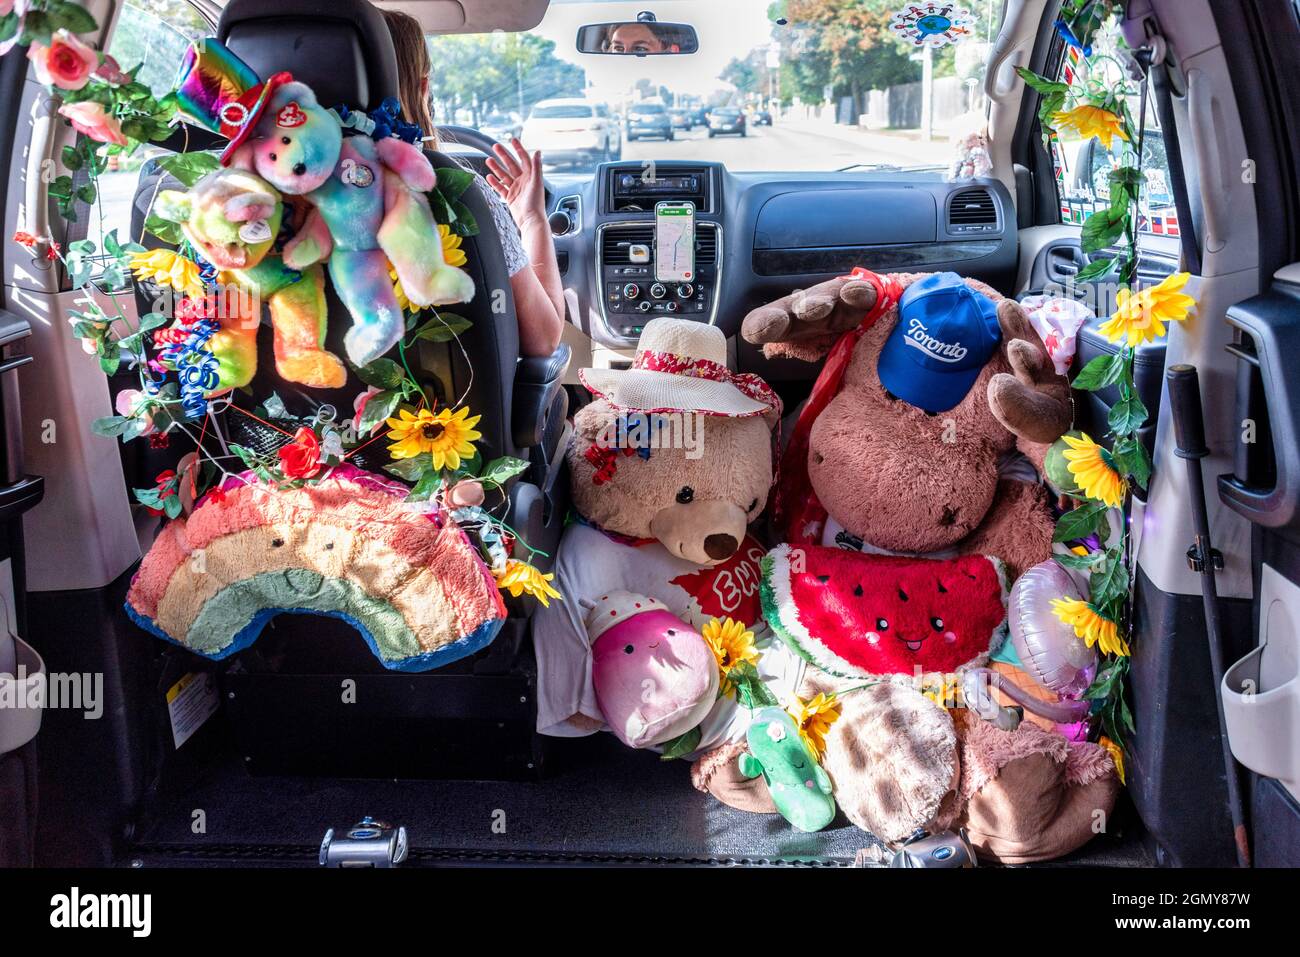 Eine weibliche Uber-Fahrerin mit ihrem barrierefreien Van, der mit Stoffspielzeug dekoriert ist. Sie behauptet, von ihren Kunden positives Feedback erhalten zu haben. Stockfoto